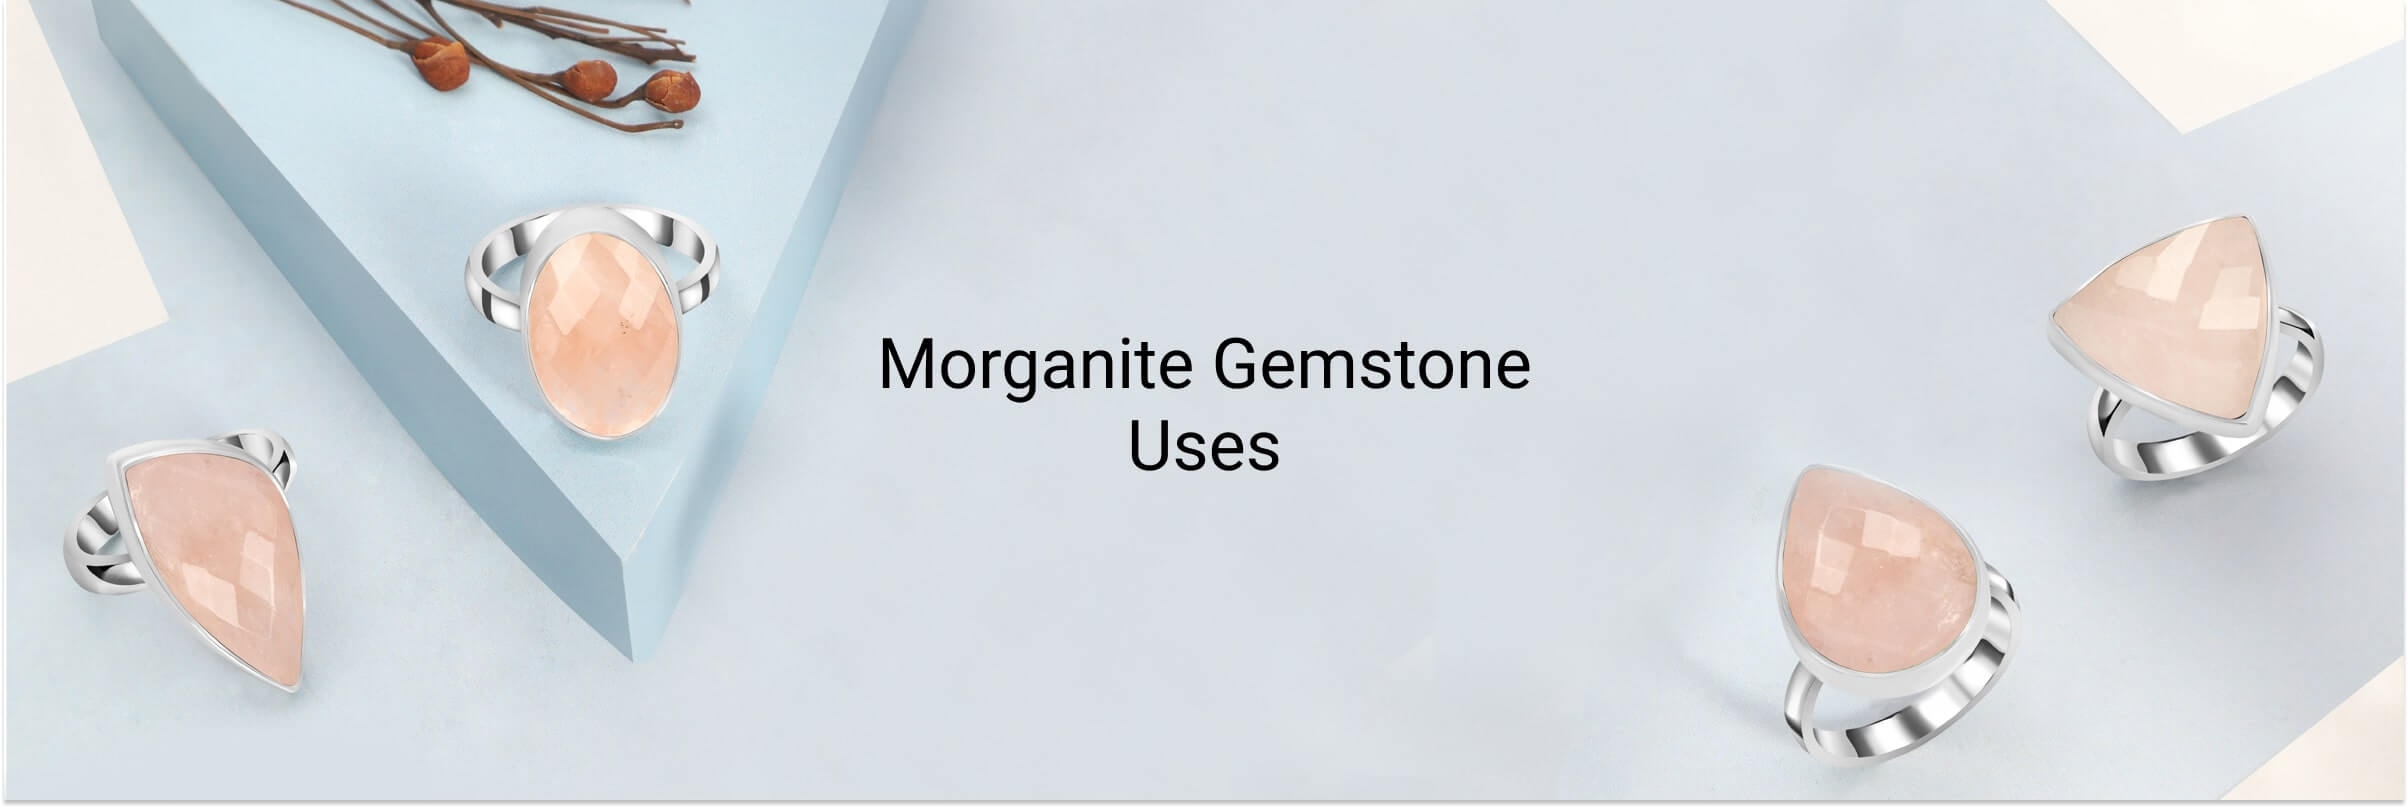 Uses of Morganite